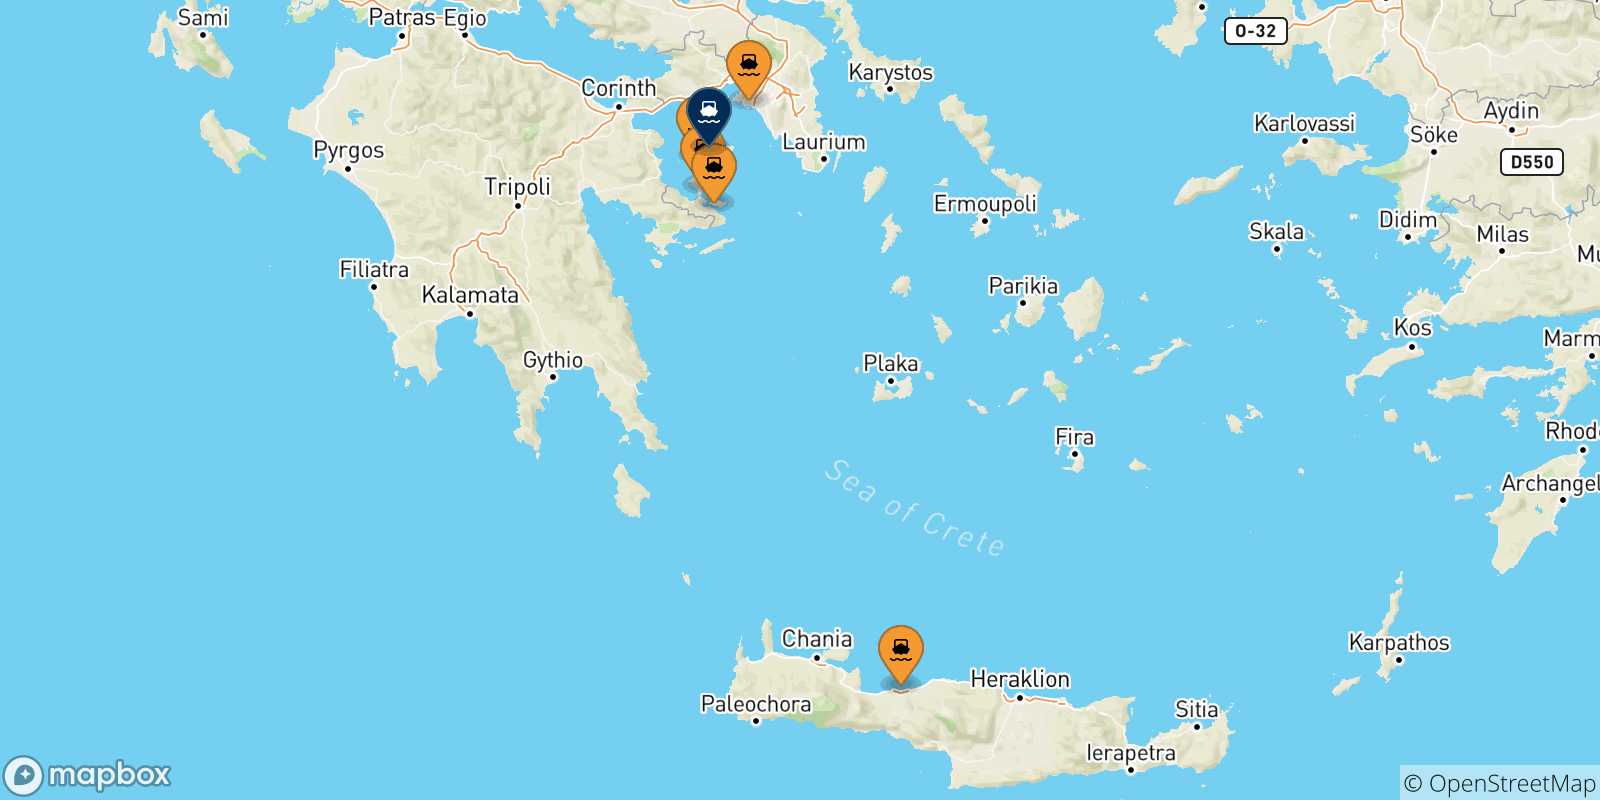 Mappa delle possibili rotte tra la Grecia e Aegina